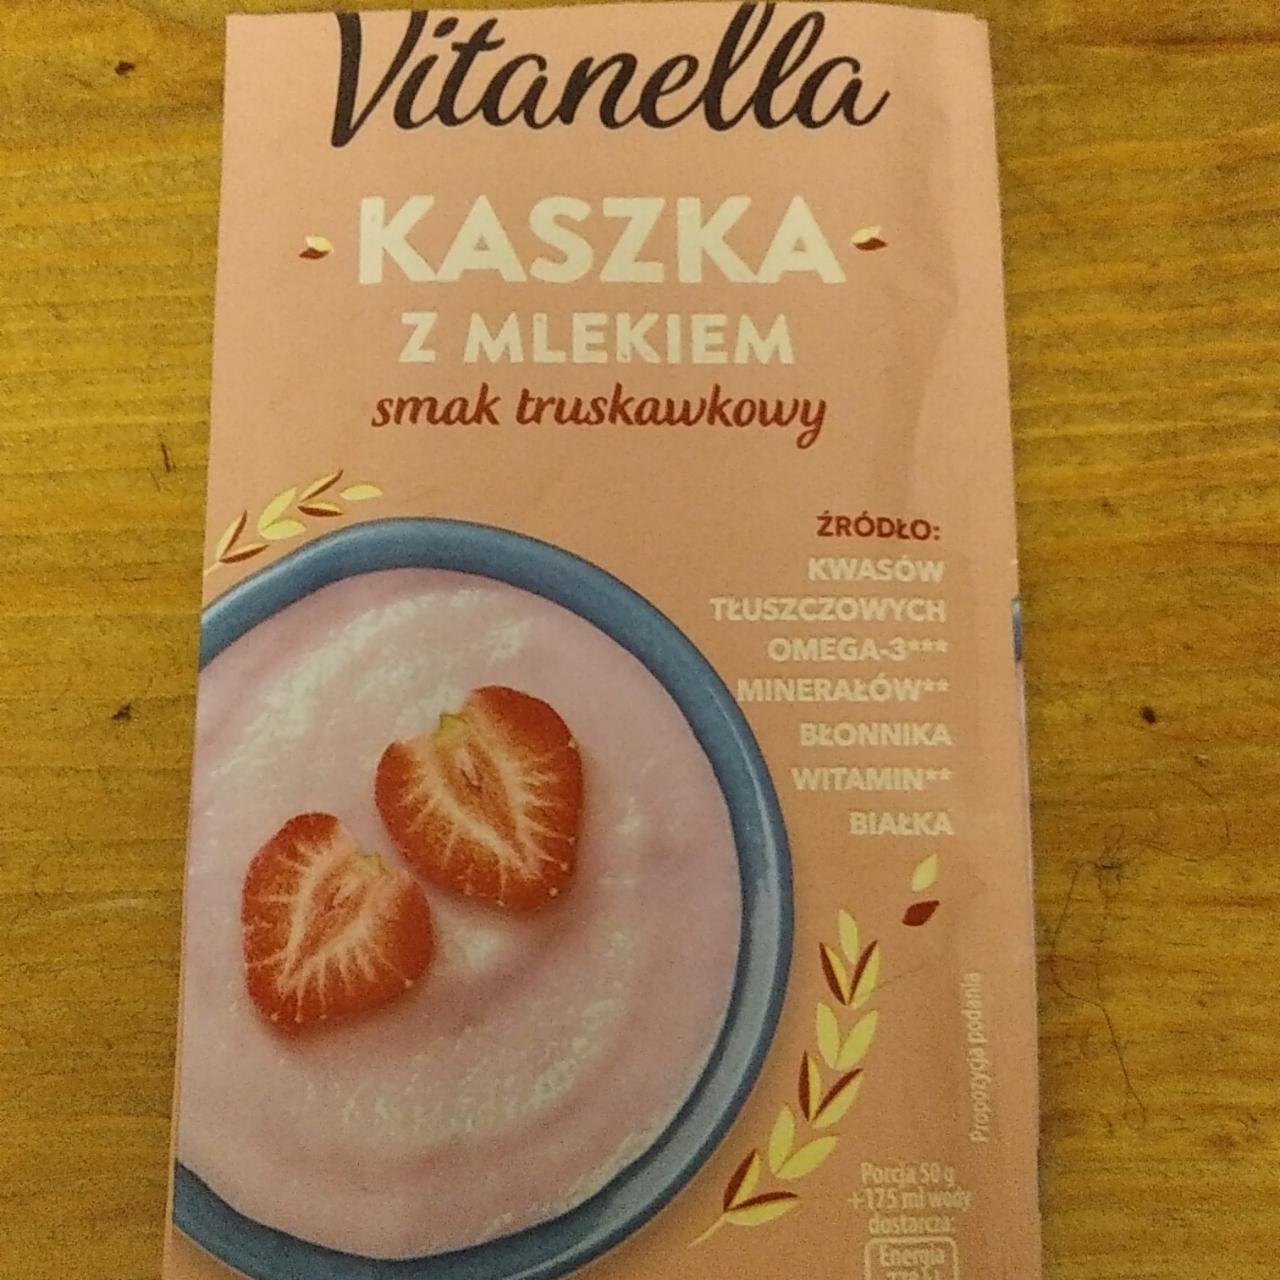 Фото - Kaszka z mlekiem smark truskawkowy Vitanella